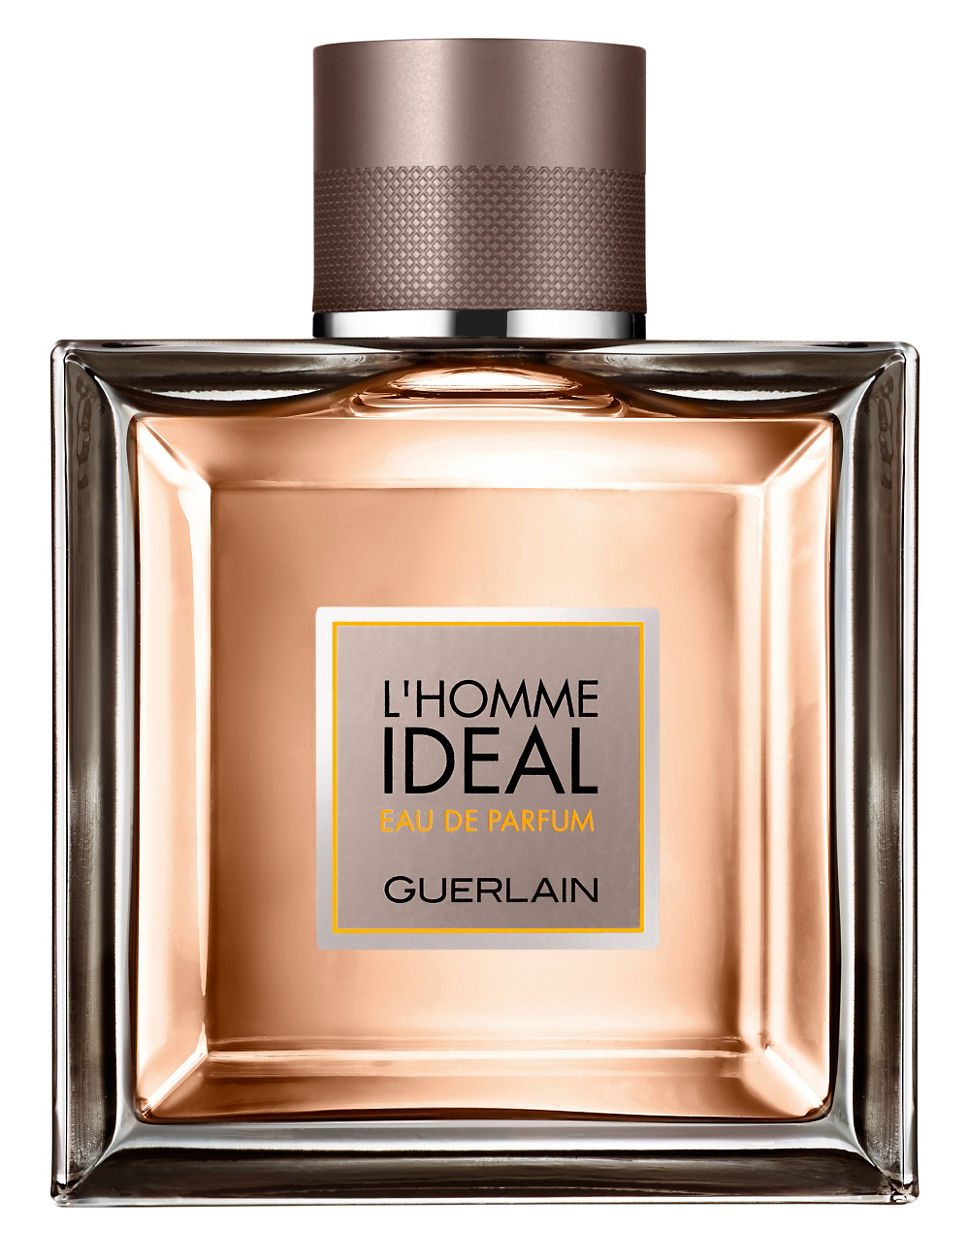 L'Homme Ideal - Guerlain - 100 ml - edp